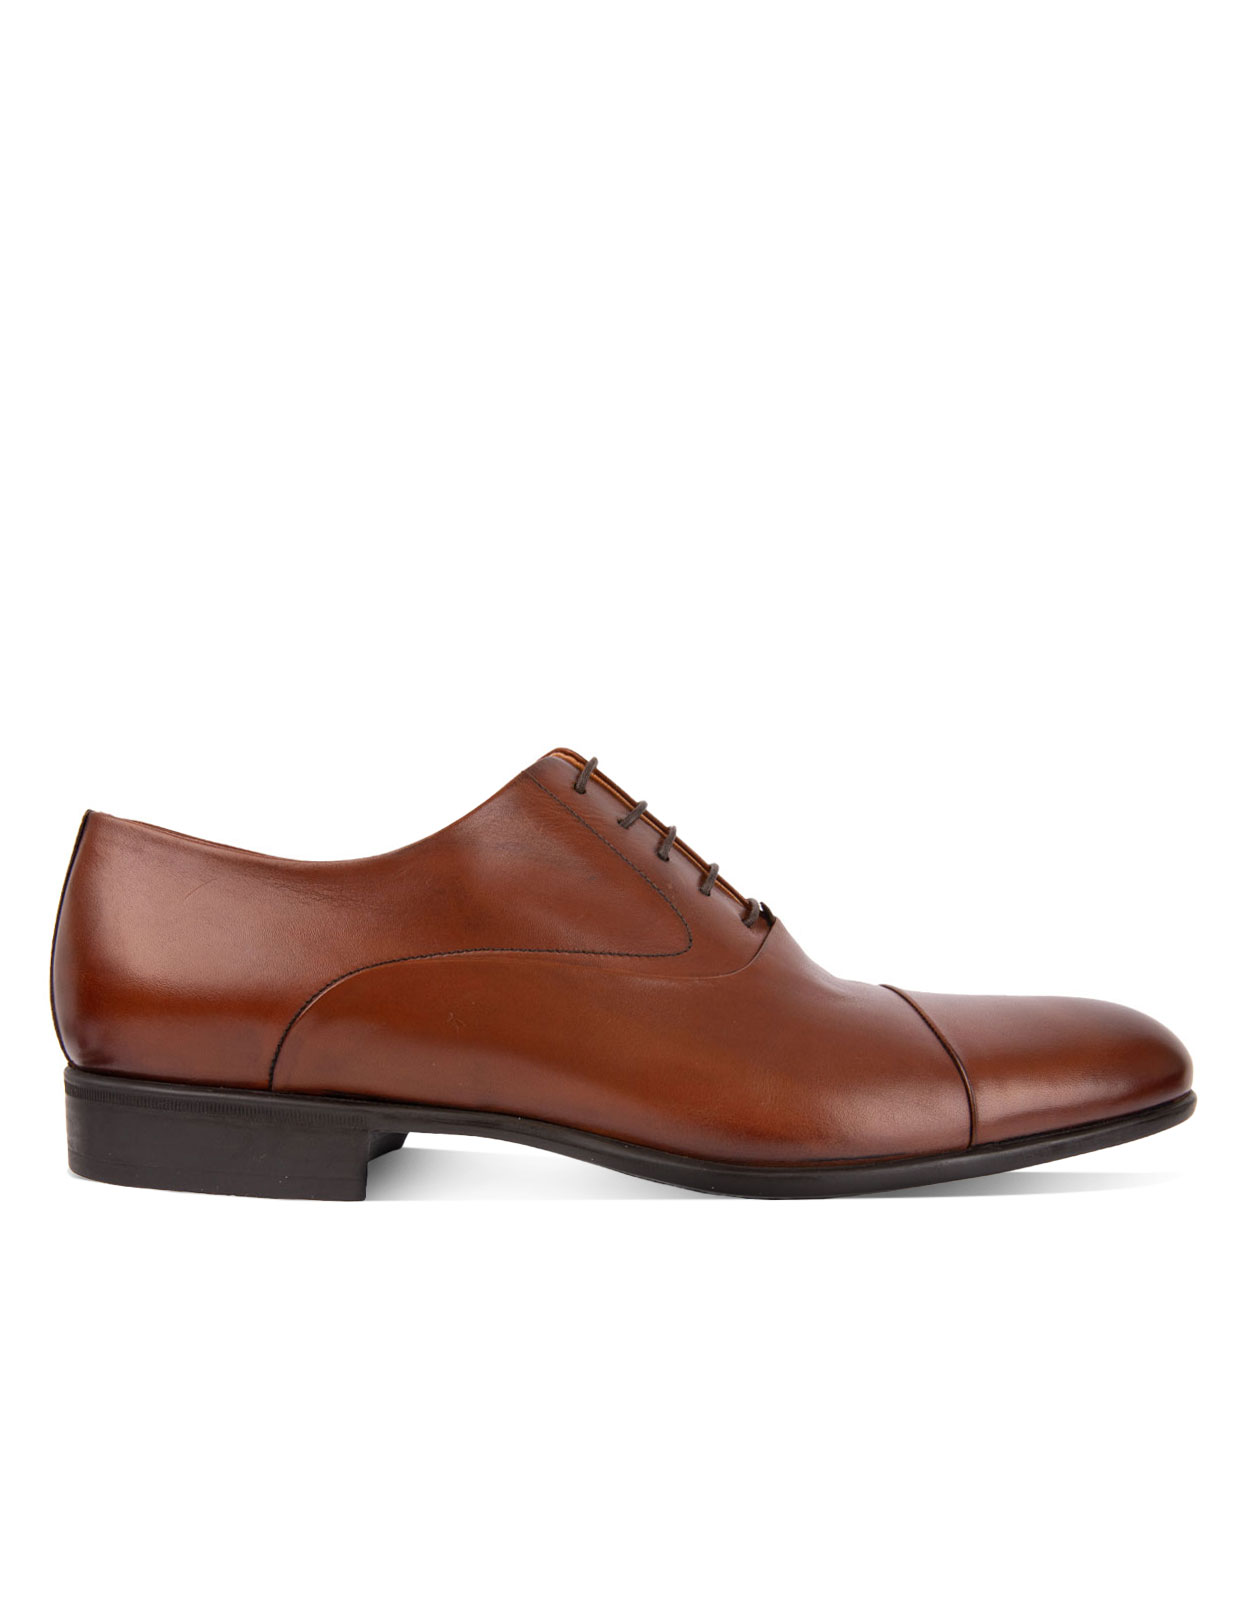 Bruges Oxford Shoe Tan Stl 6.5